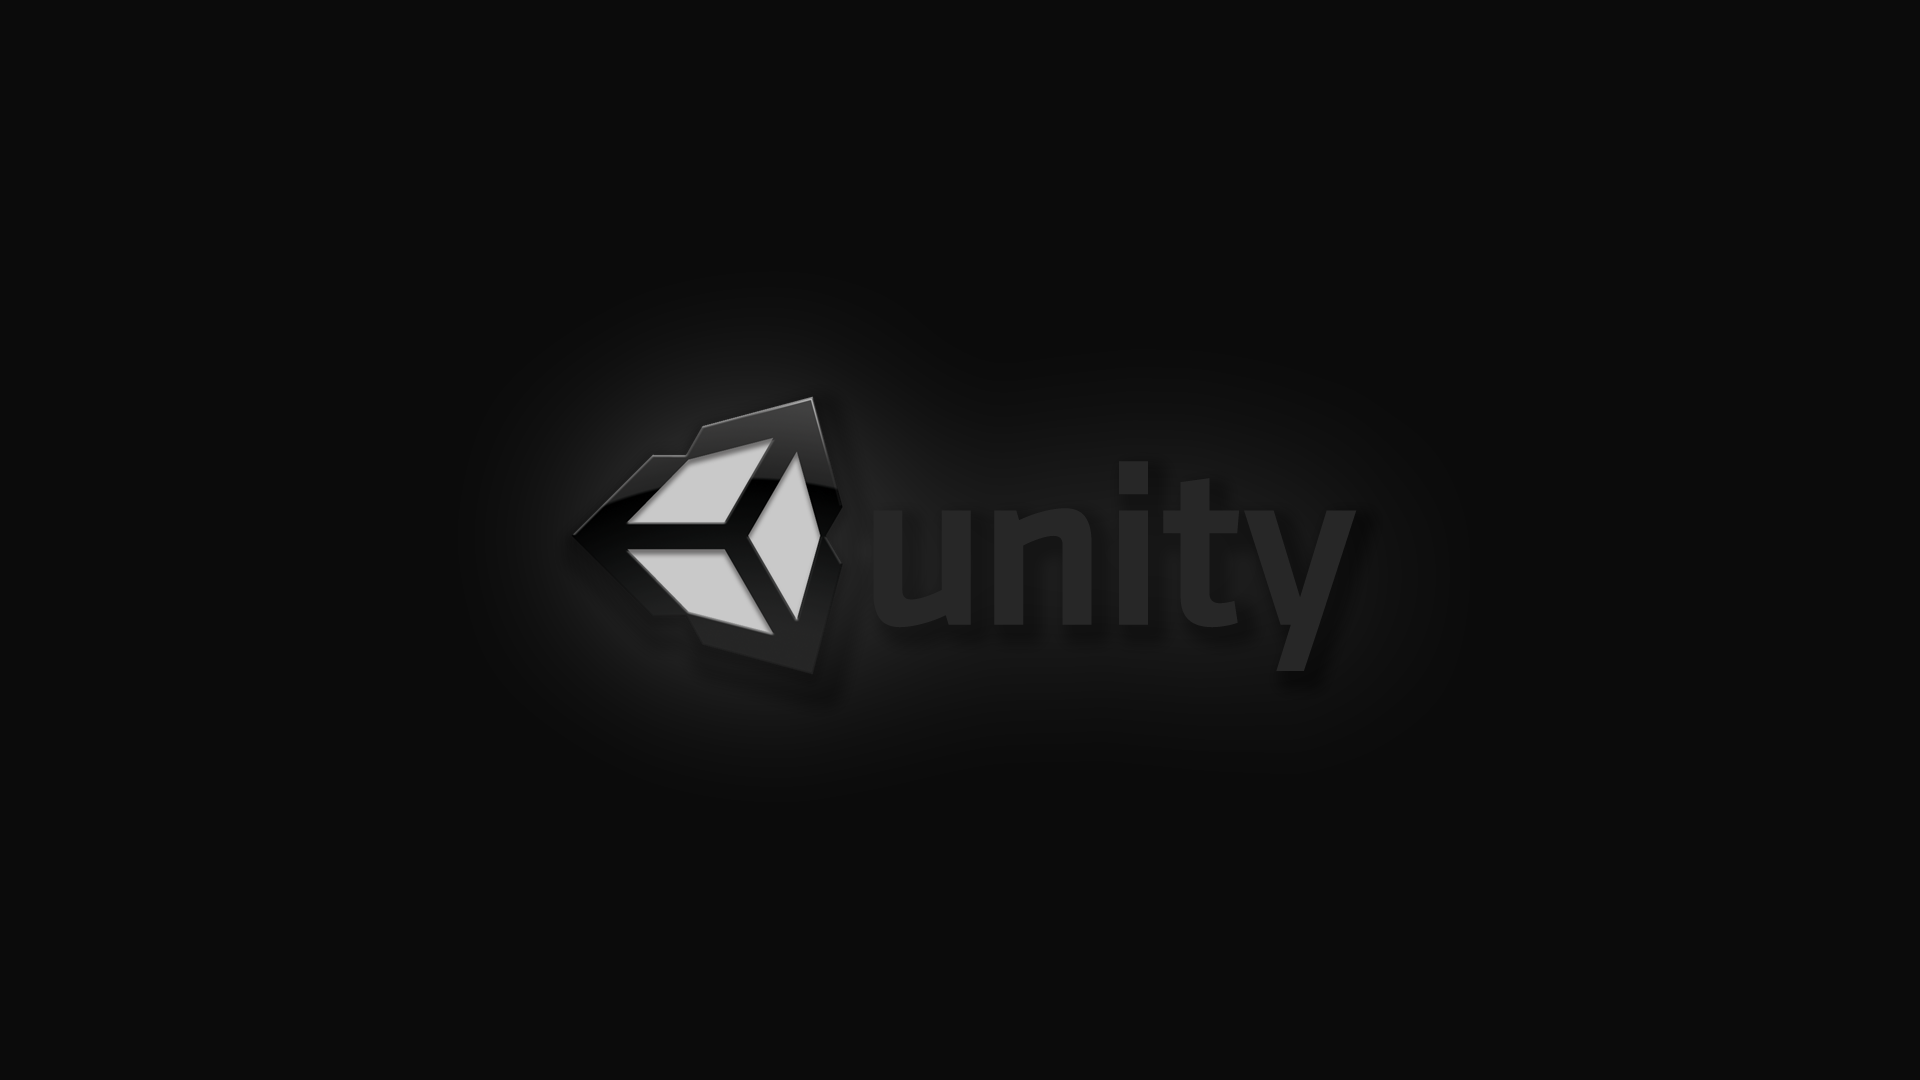 Hãy tải về nền Unity 3D đẹp mắt này để tăng cường sự đồng nhất của thiết kế trang web của bạn. Với thiết kế độc đáo và sắc nét của Unity 3D, hình nền này sẽ làm đẹp cho bất kỳ trang web nào.